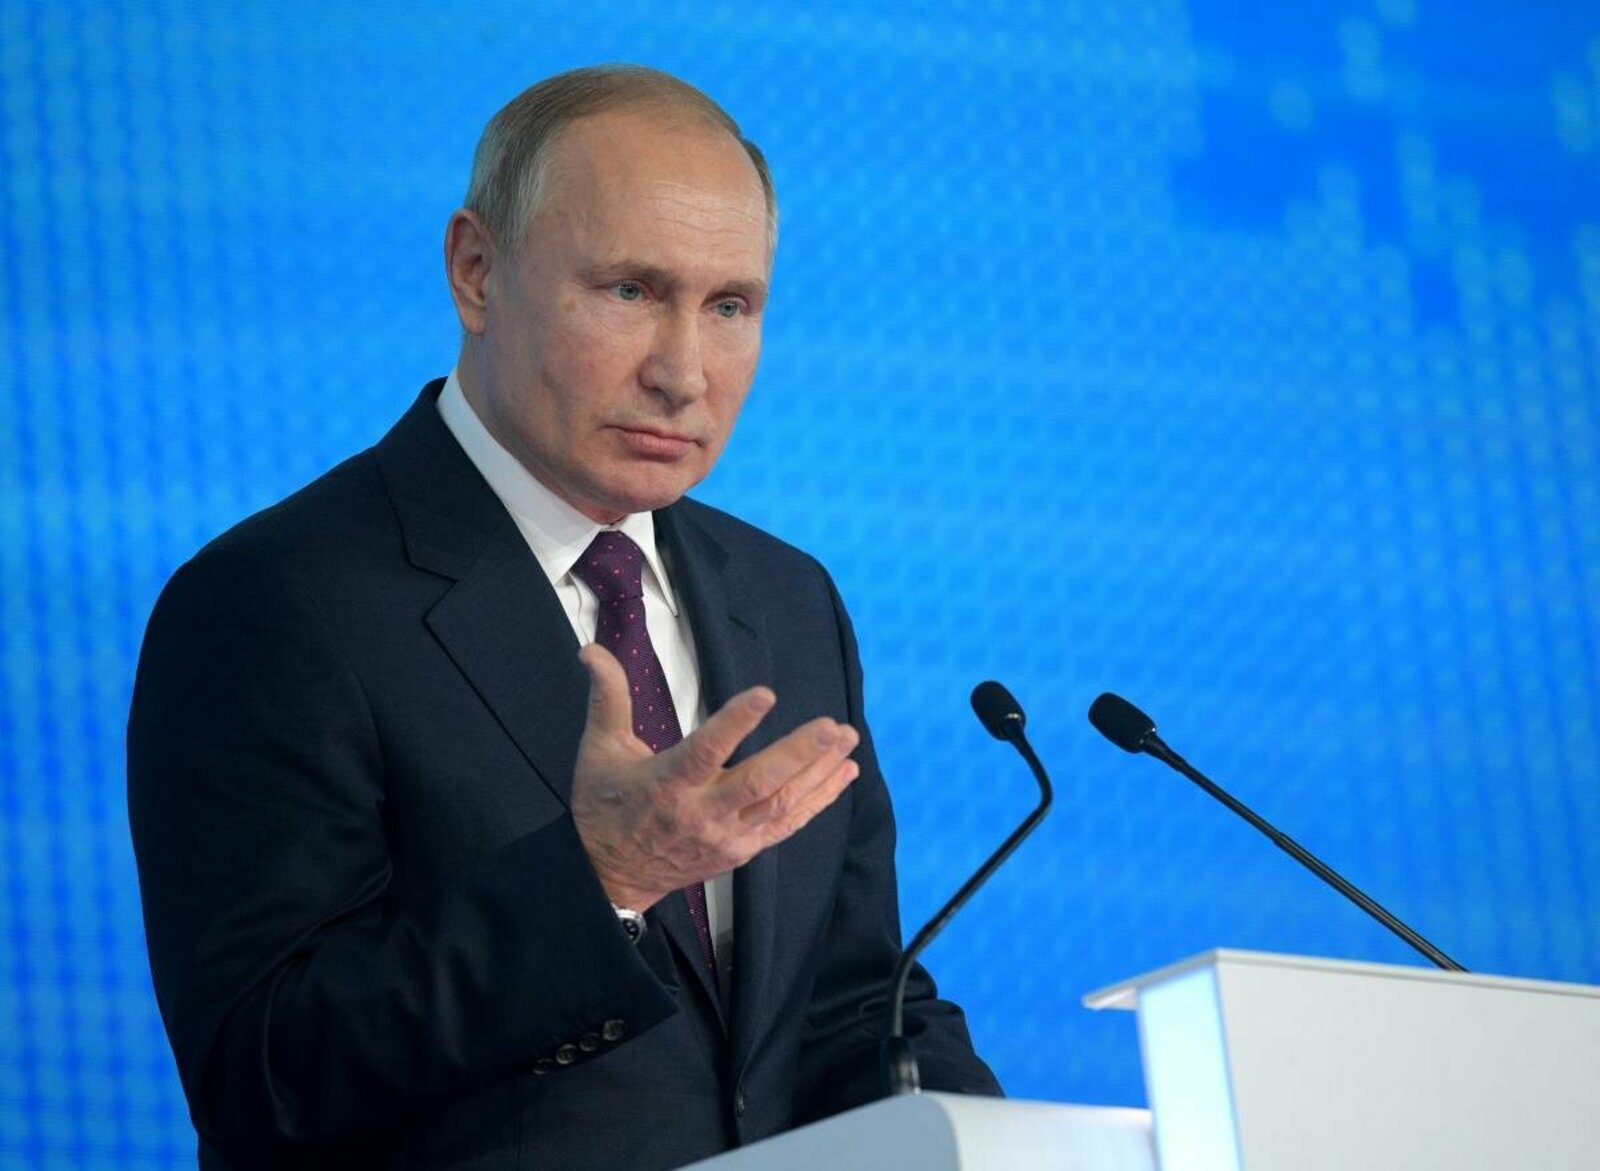 Вопросы Владимиру Путину от журналистов из Уфы и чем это всё закончилось